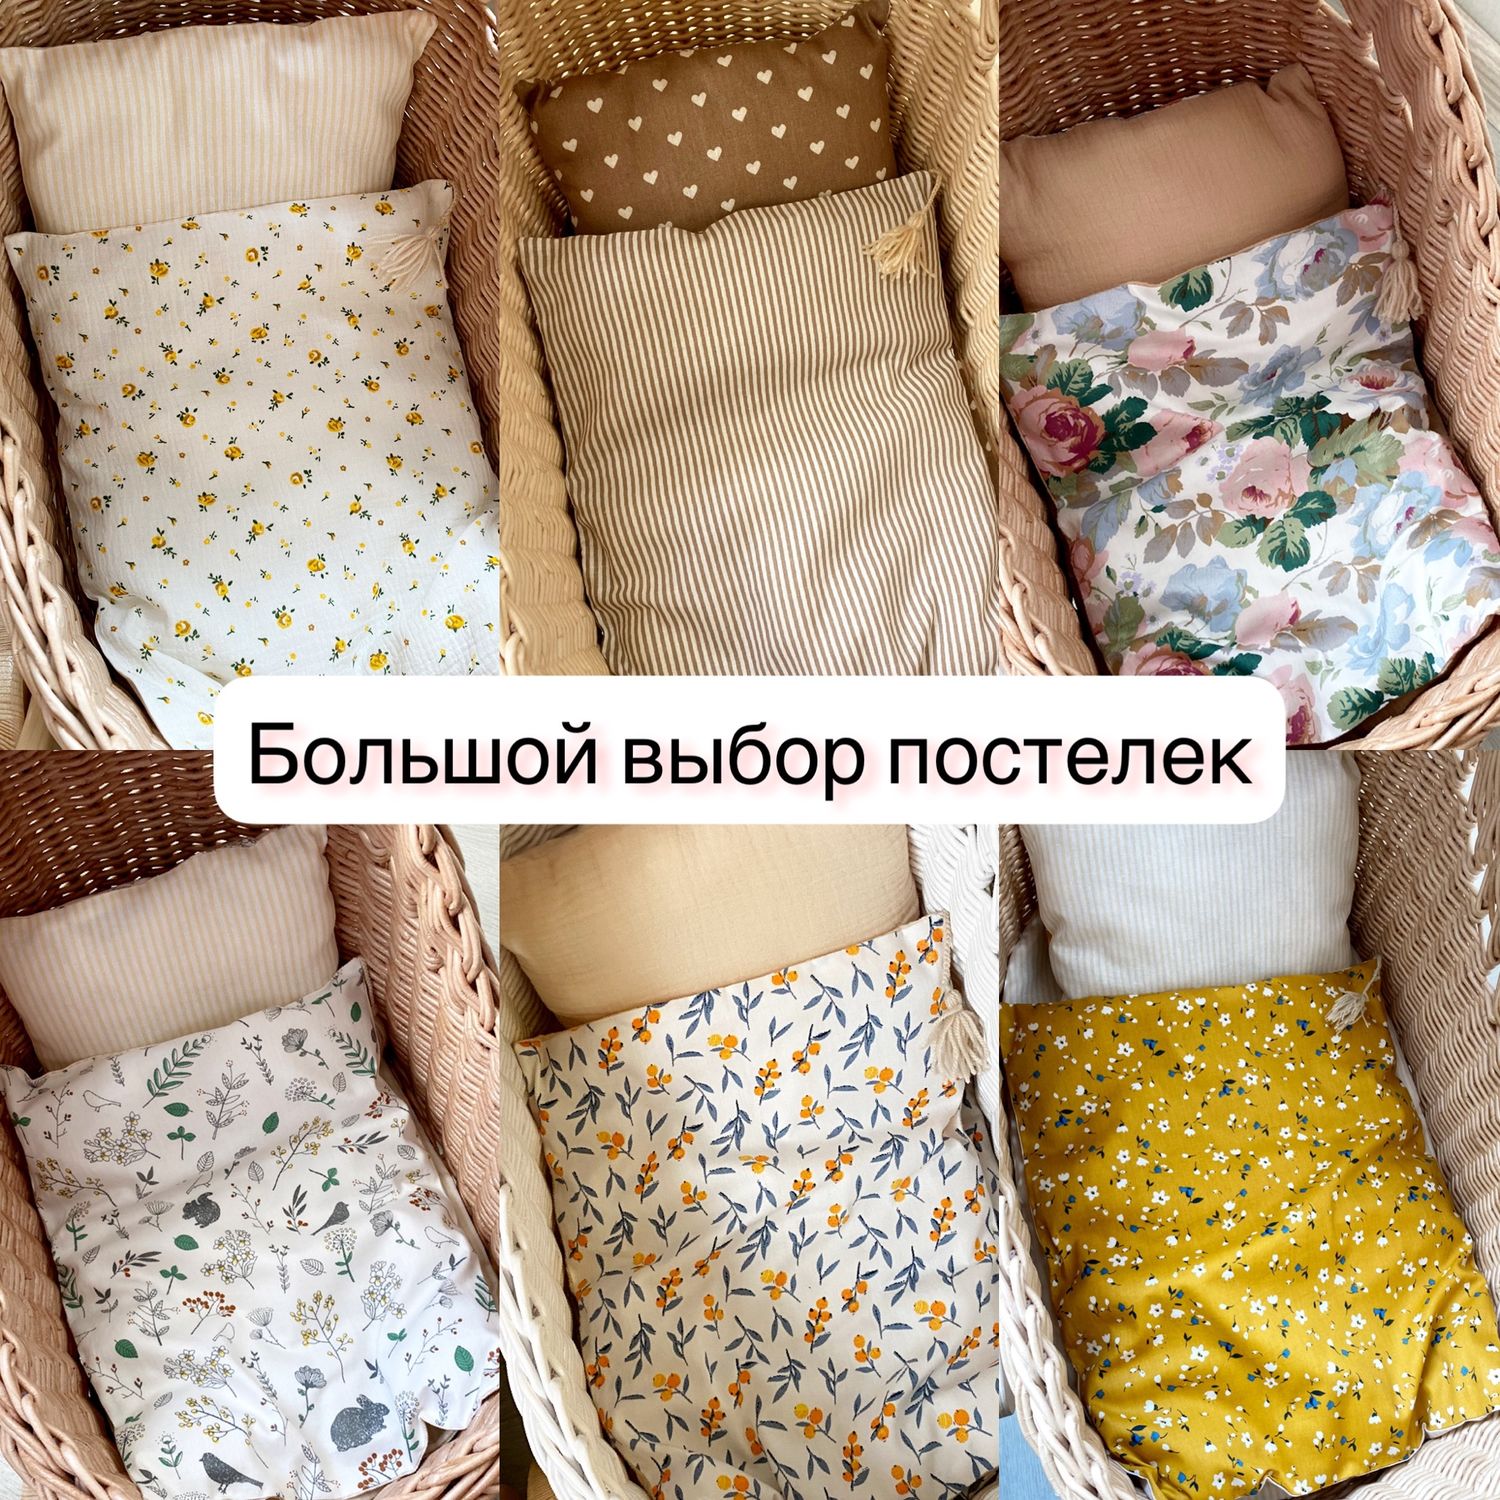 Кровать плетеная для куклы